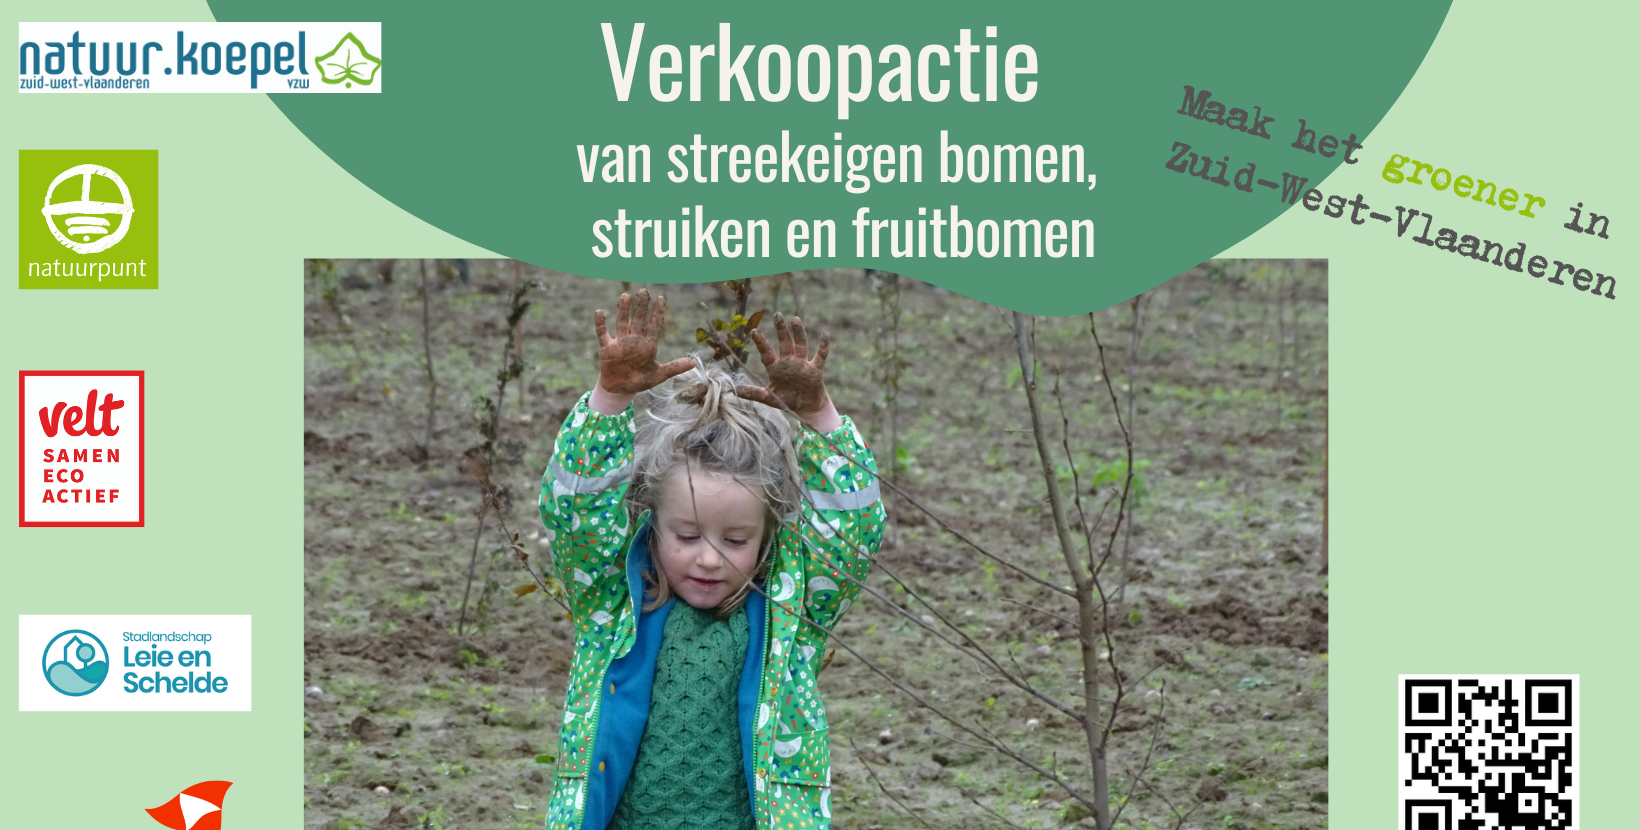 Maak het groener in Zuid-West-Vlaanderen_FB banner